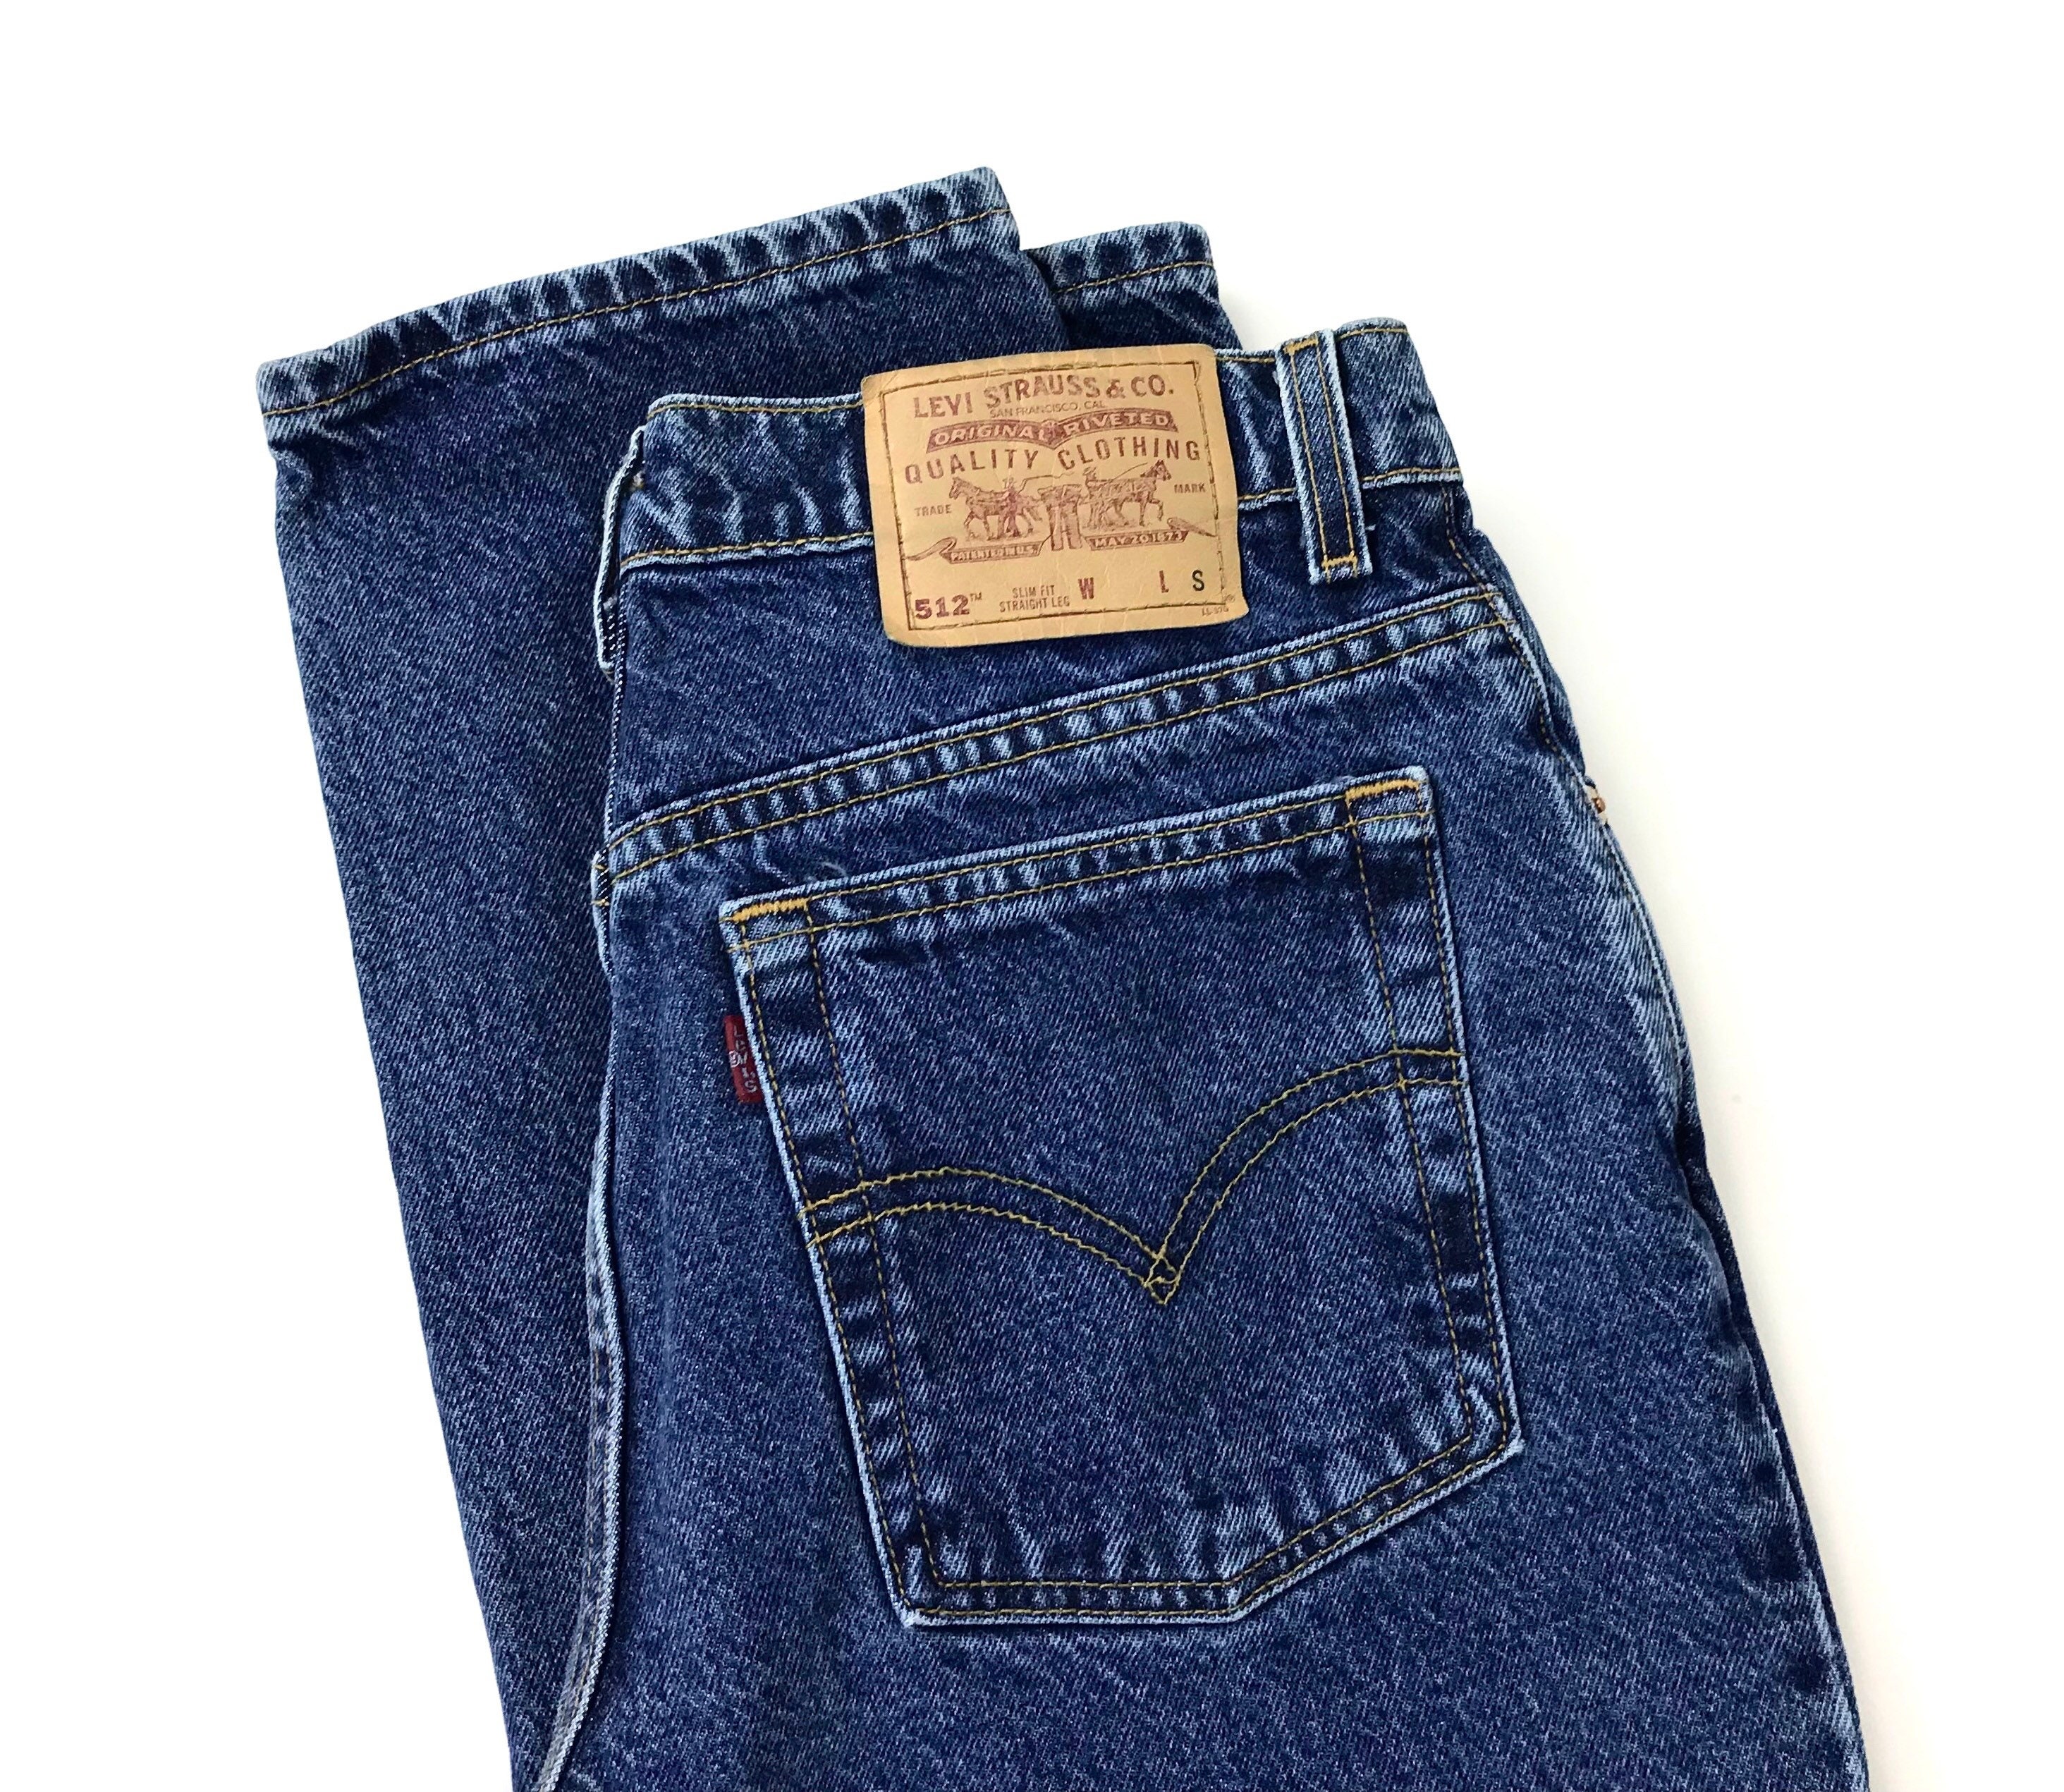 Levi's 512 Vintage Jeans / Size 29 30